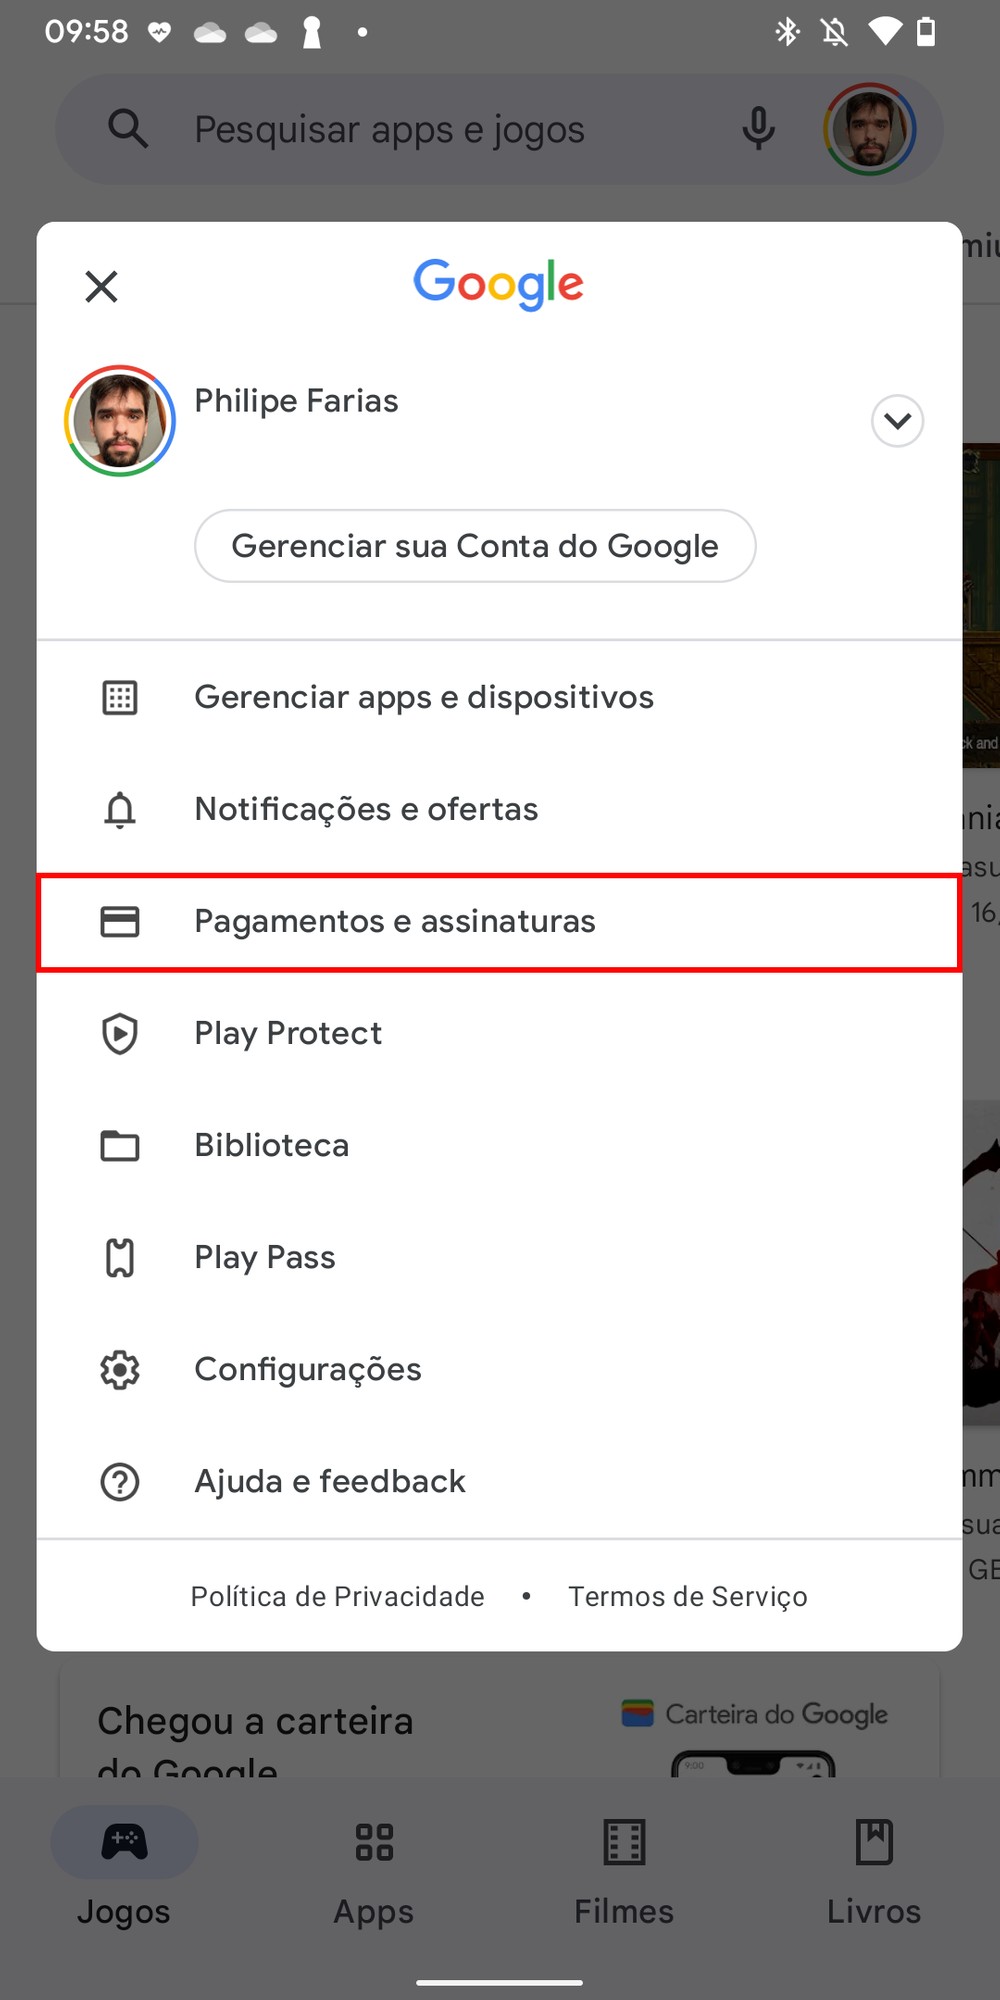 Saiba como cancelar a assinatura de um app no Android - TecMundo